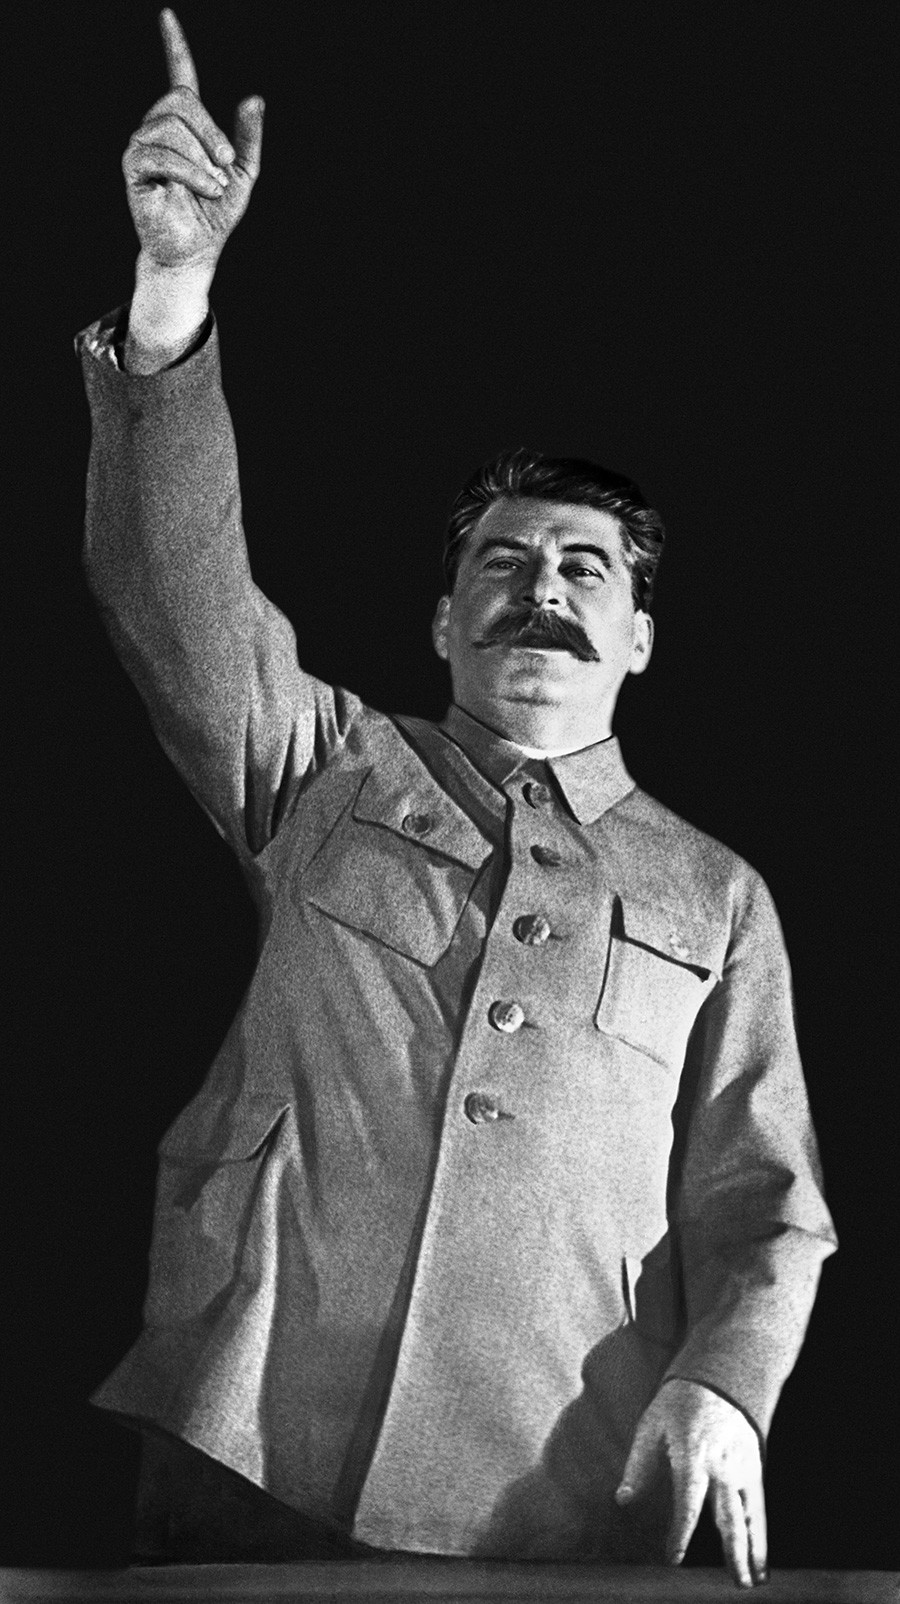 Јосиф Стаљин (Џугашвили), генерални секретар Централног комитета Сверуске комунистичке партије (бољшевика) од 1922, председник совјетске владе (председник Савета народних комесара од 1941, председник Савета министара СССР-а од 1946), генералисимус Совјетског Савеза (1945).